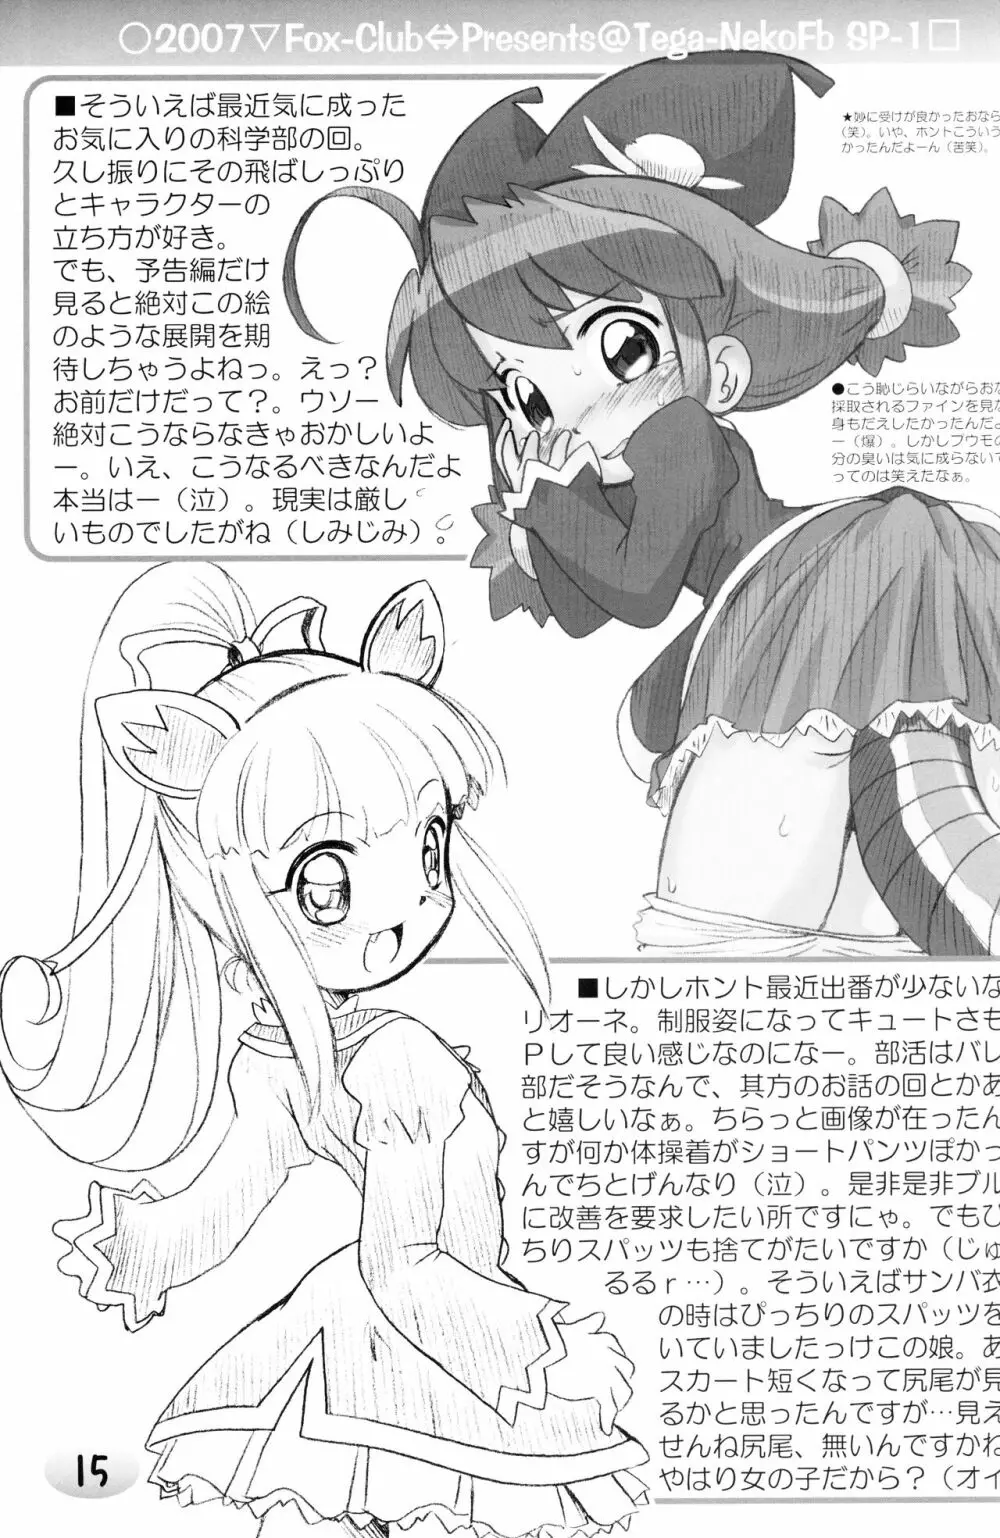 TeGa‐NeKo Fb/SP ふたご姫 ぷらす 13ページ